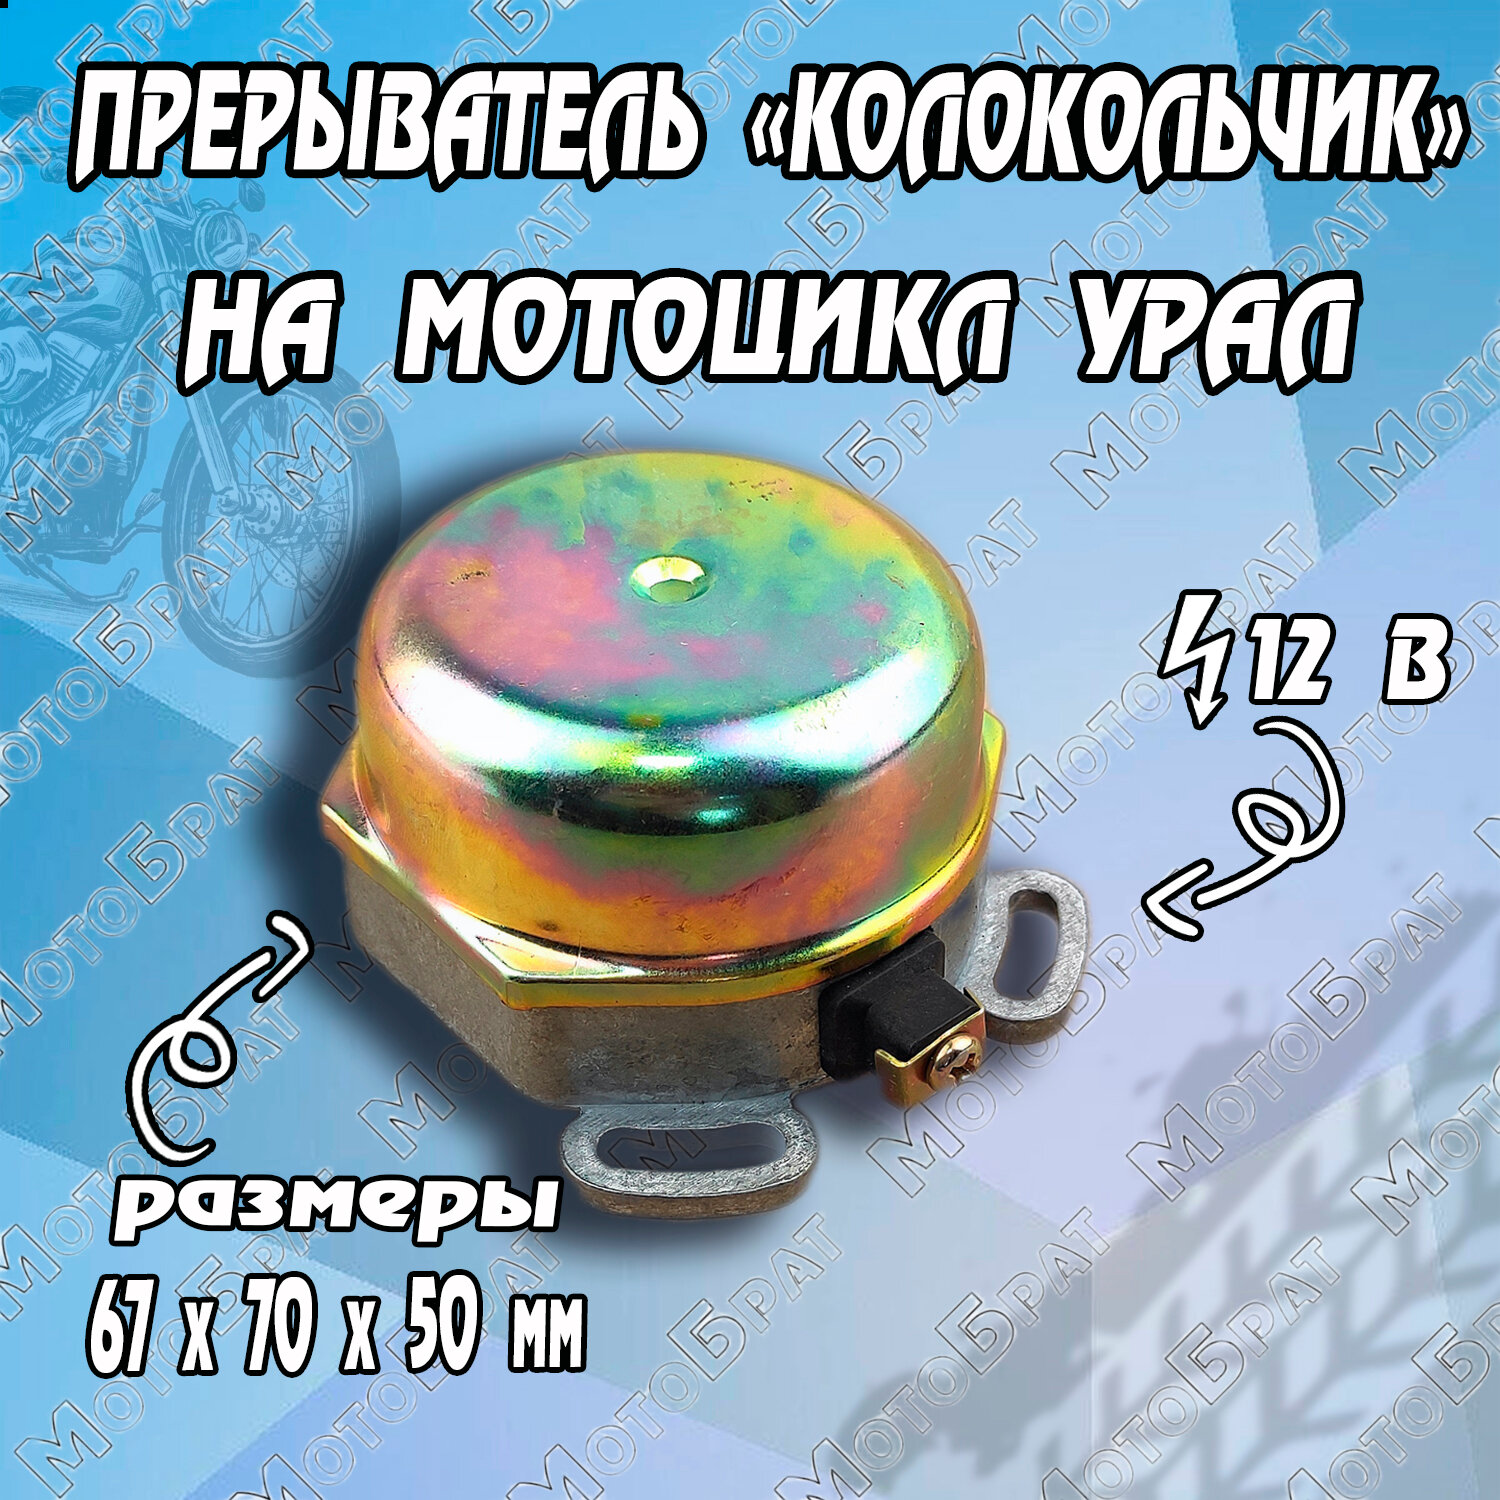 Прерыватель "Колокольчик" на мотоцикл Урал